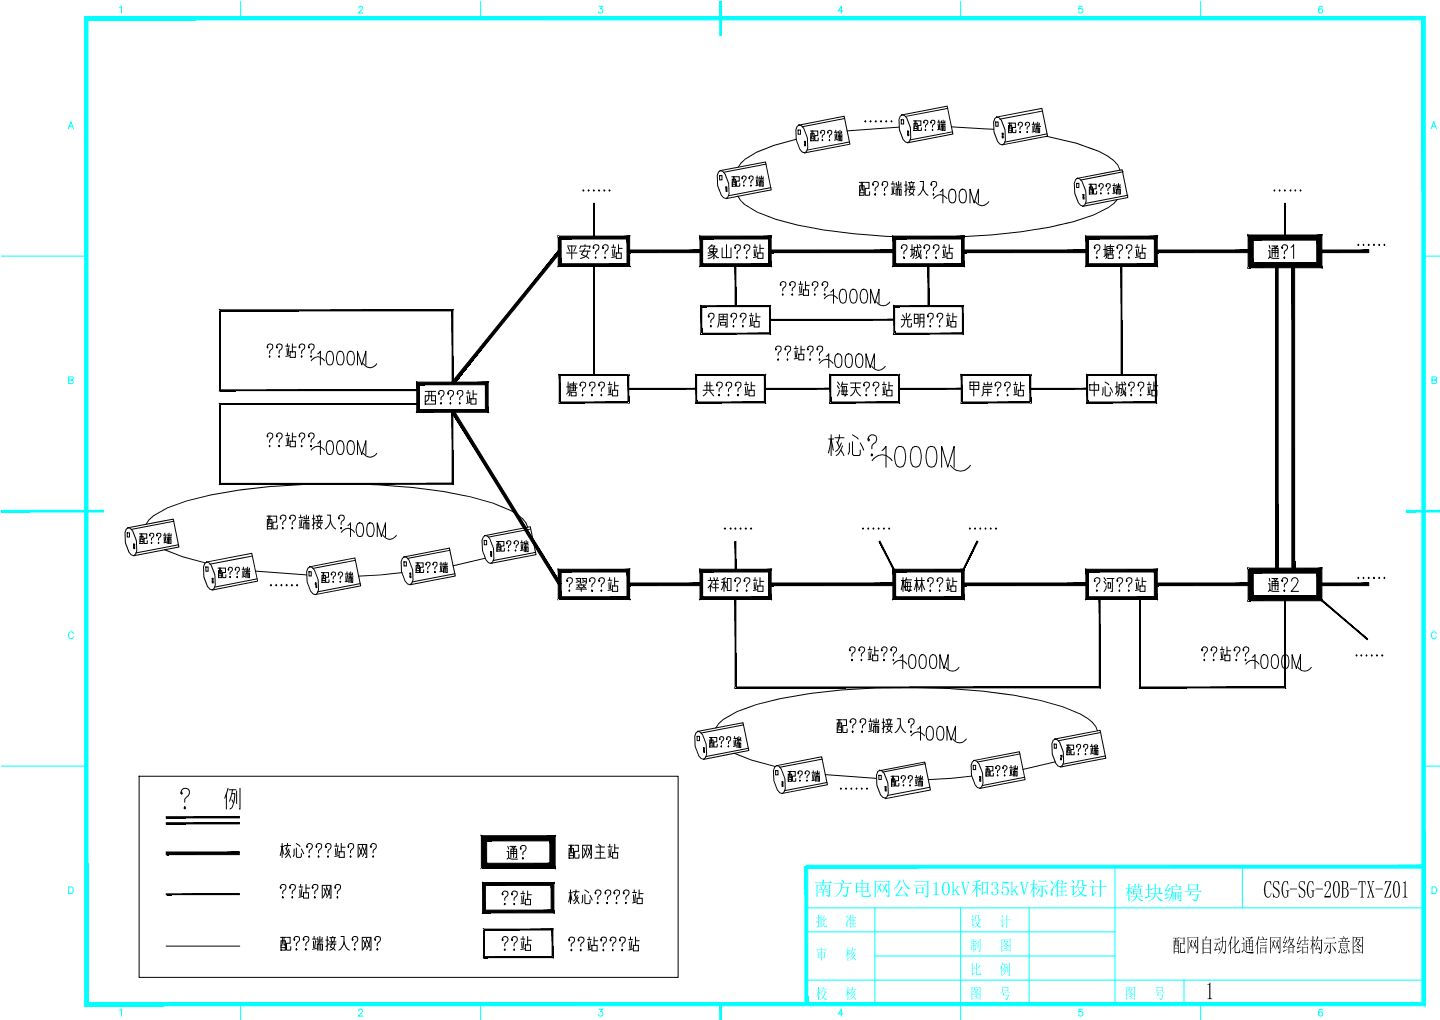 配网自动化通信网络结构示意图CAD